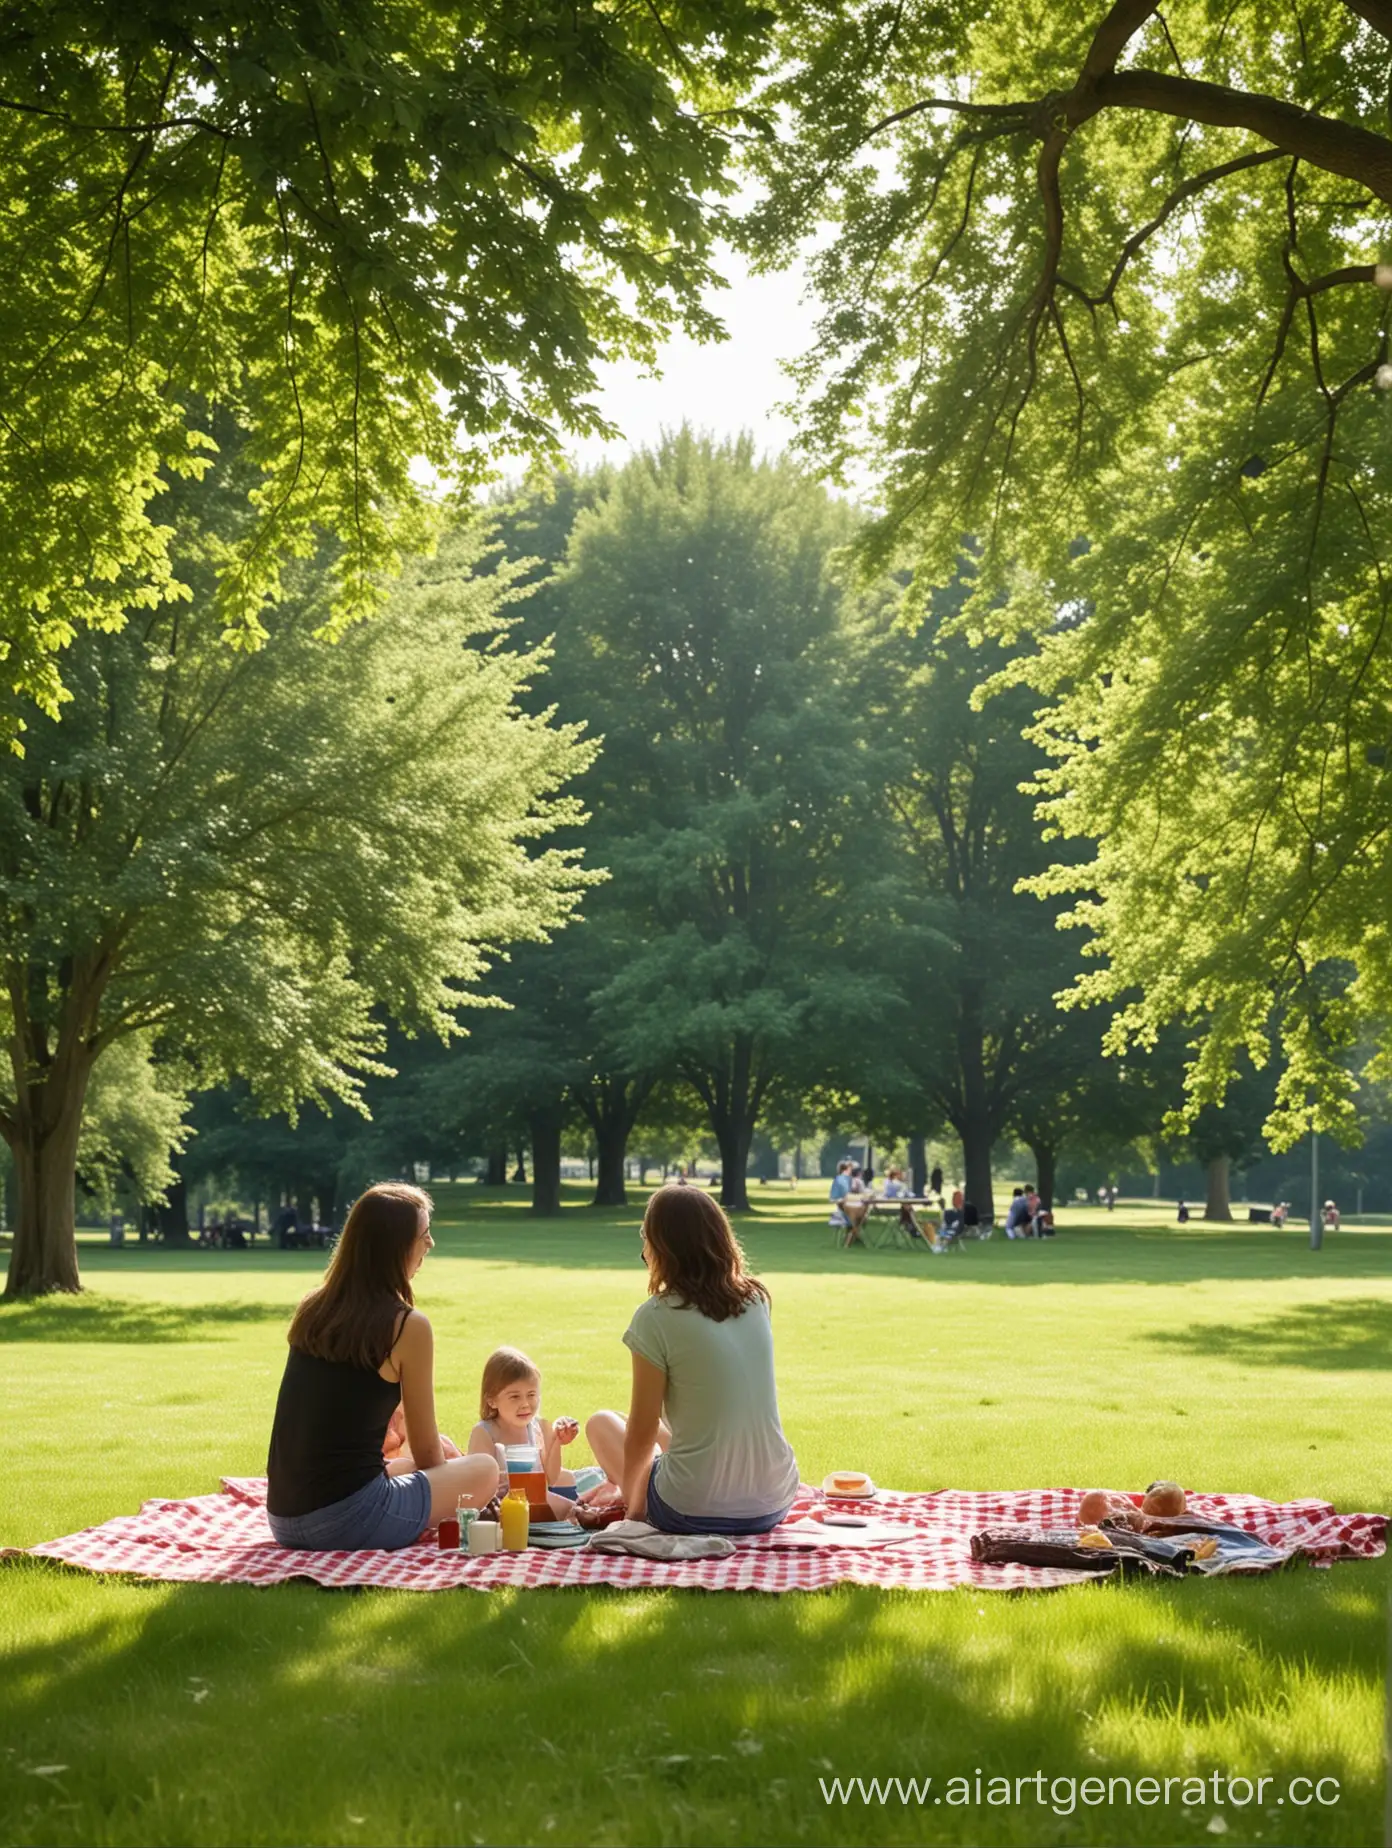  фото 2-3 человека на заднем фоне , лето, семья,пикник,зелень, счпстье ,парк , пустой передний план